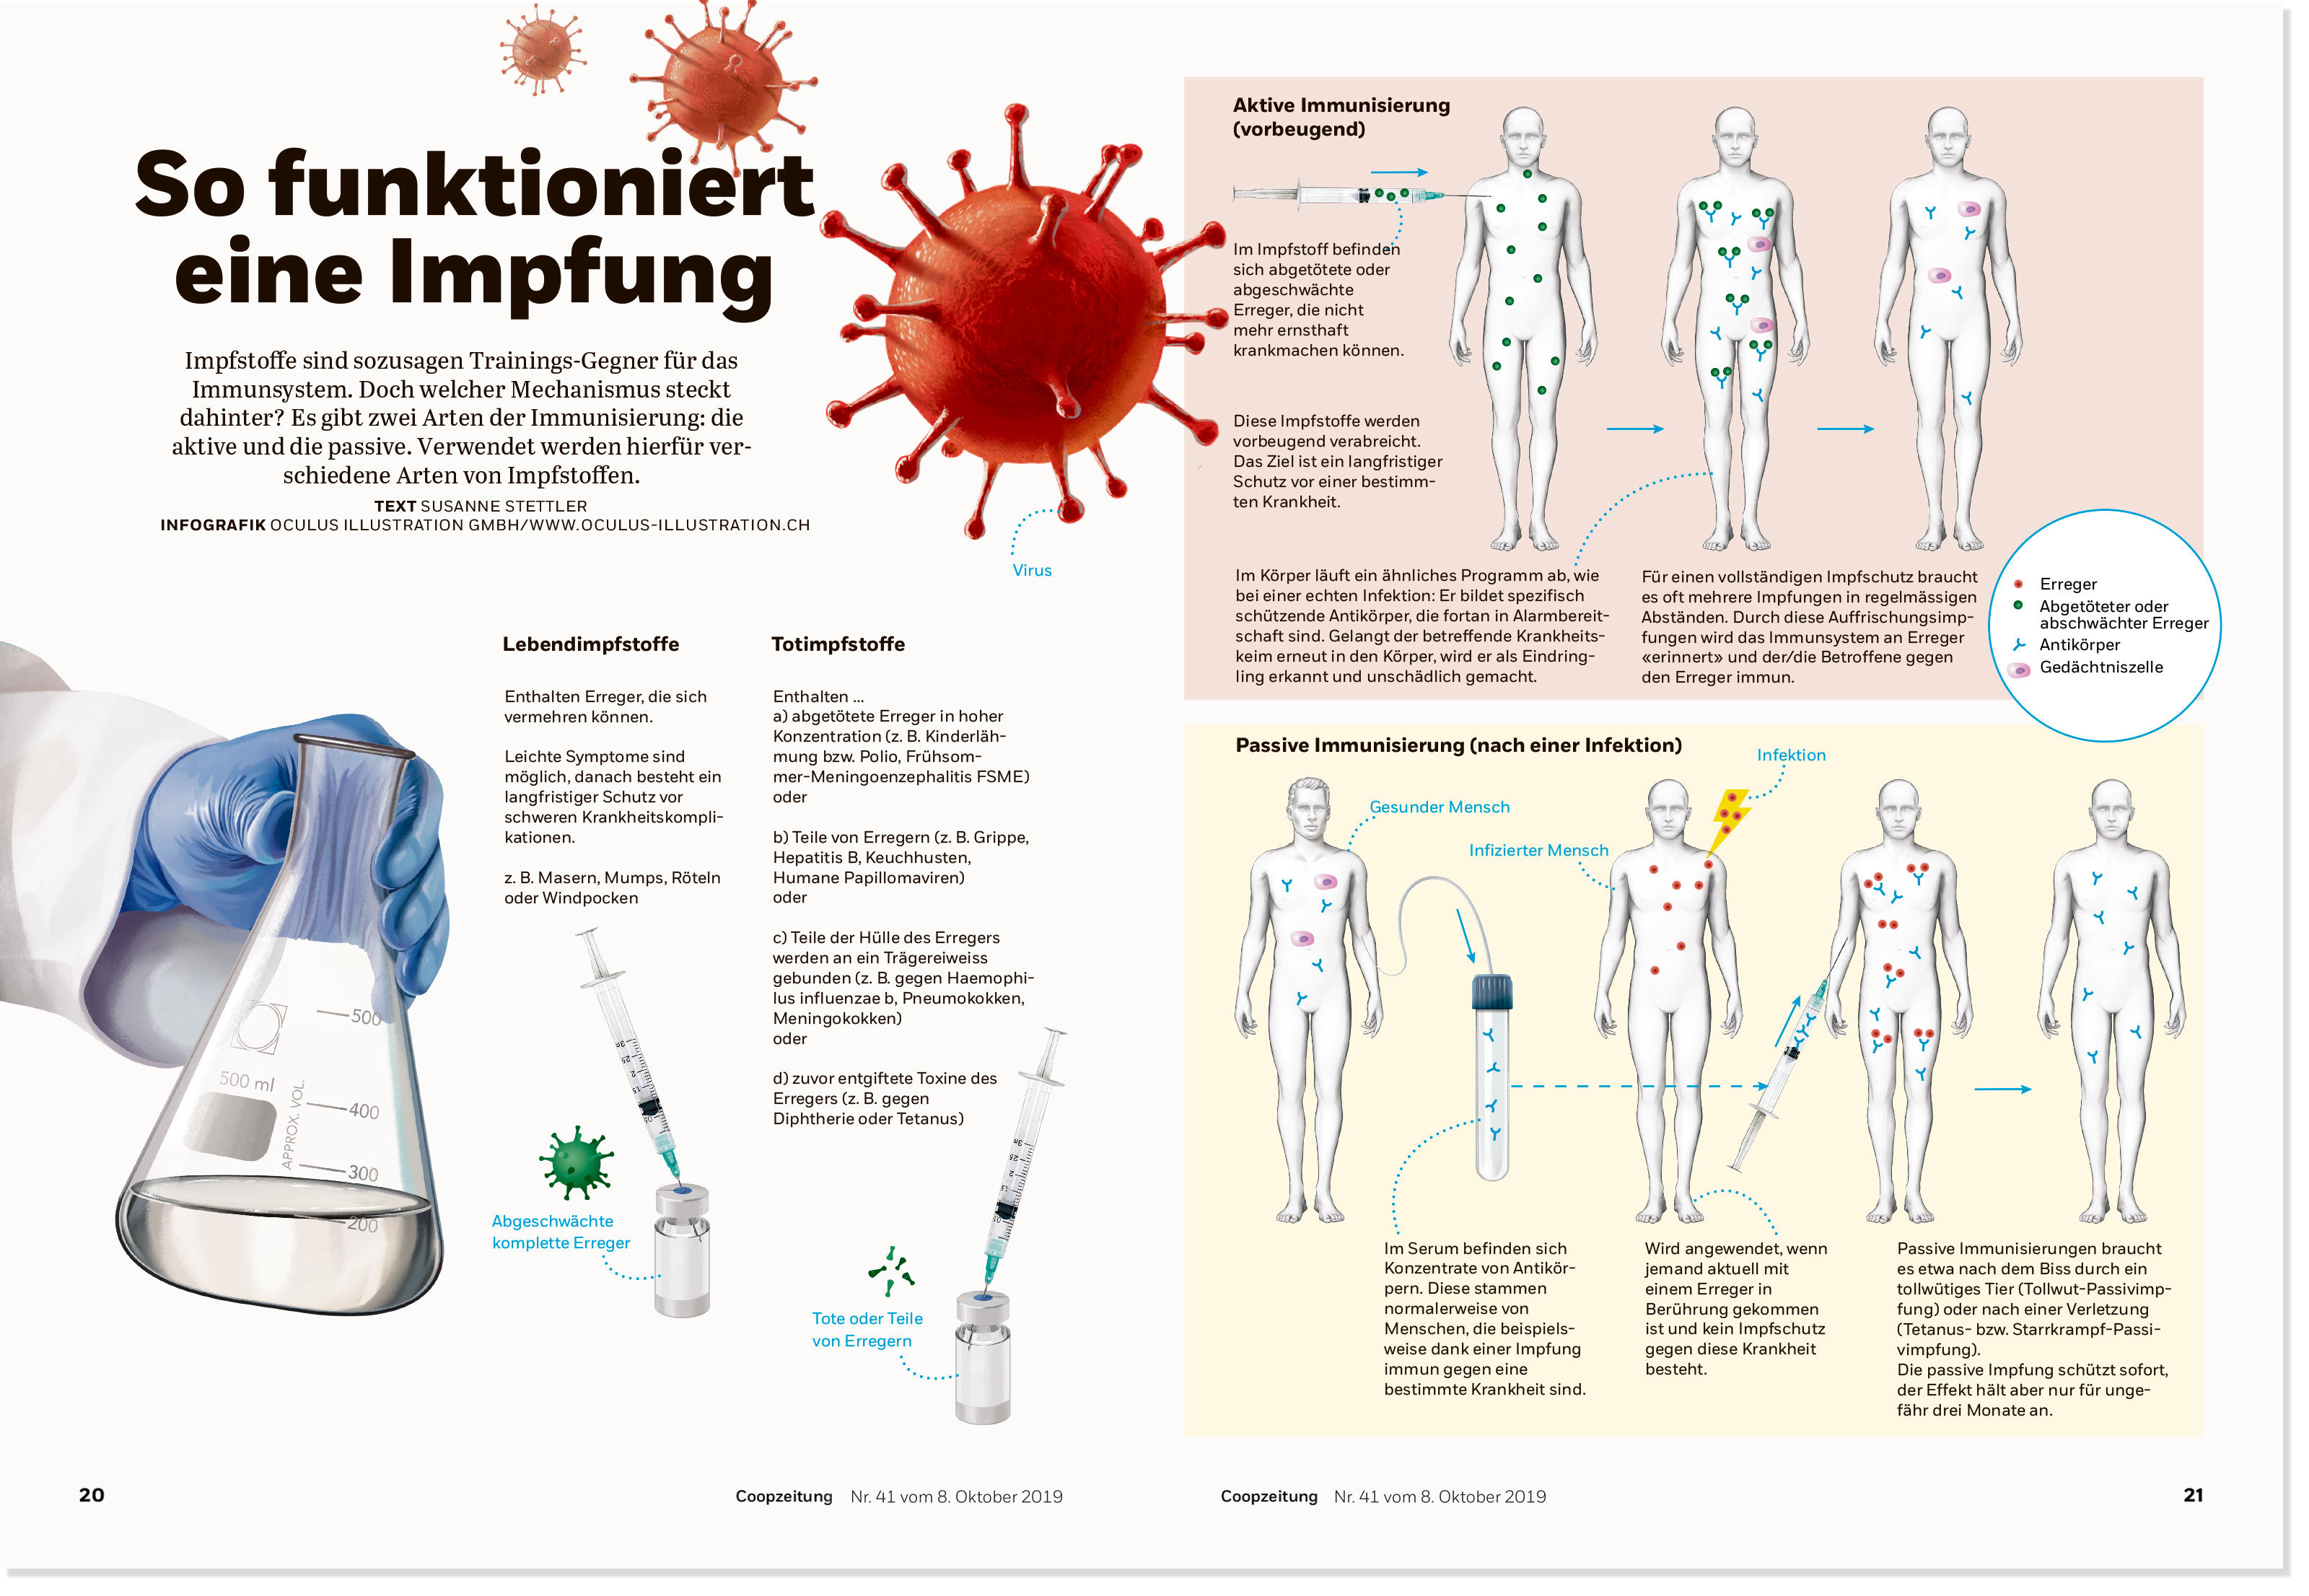 oculus-illustration-coopzeitung-infografik-impfen